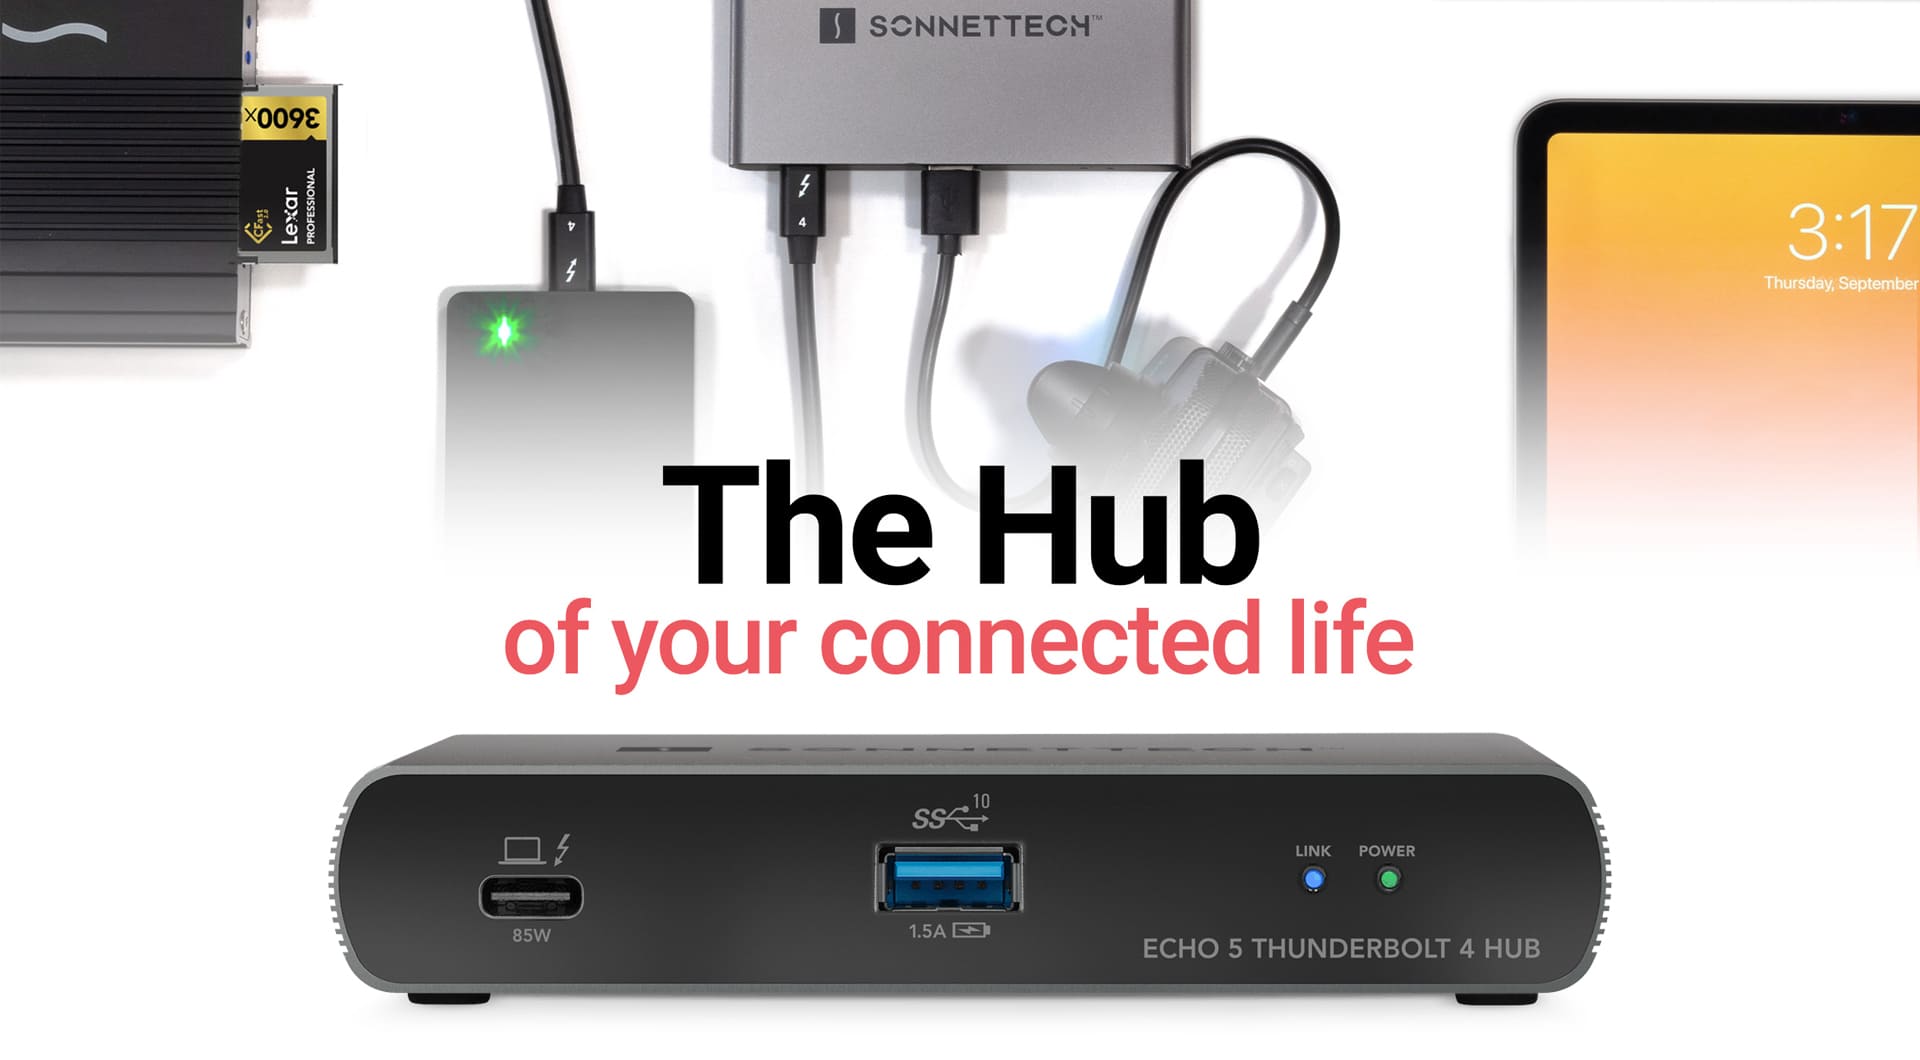 Echo 5 Thunderbolt 4 Hub - SONNETTECH